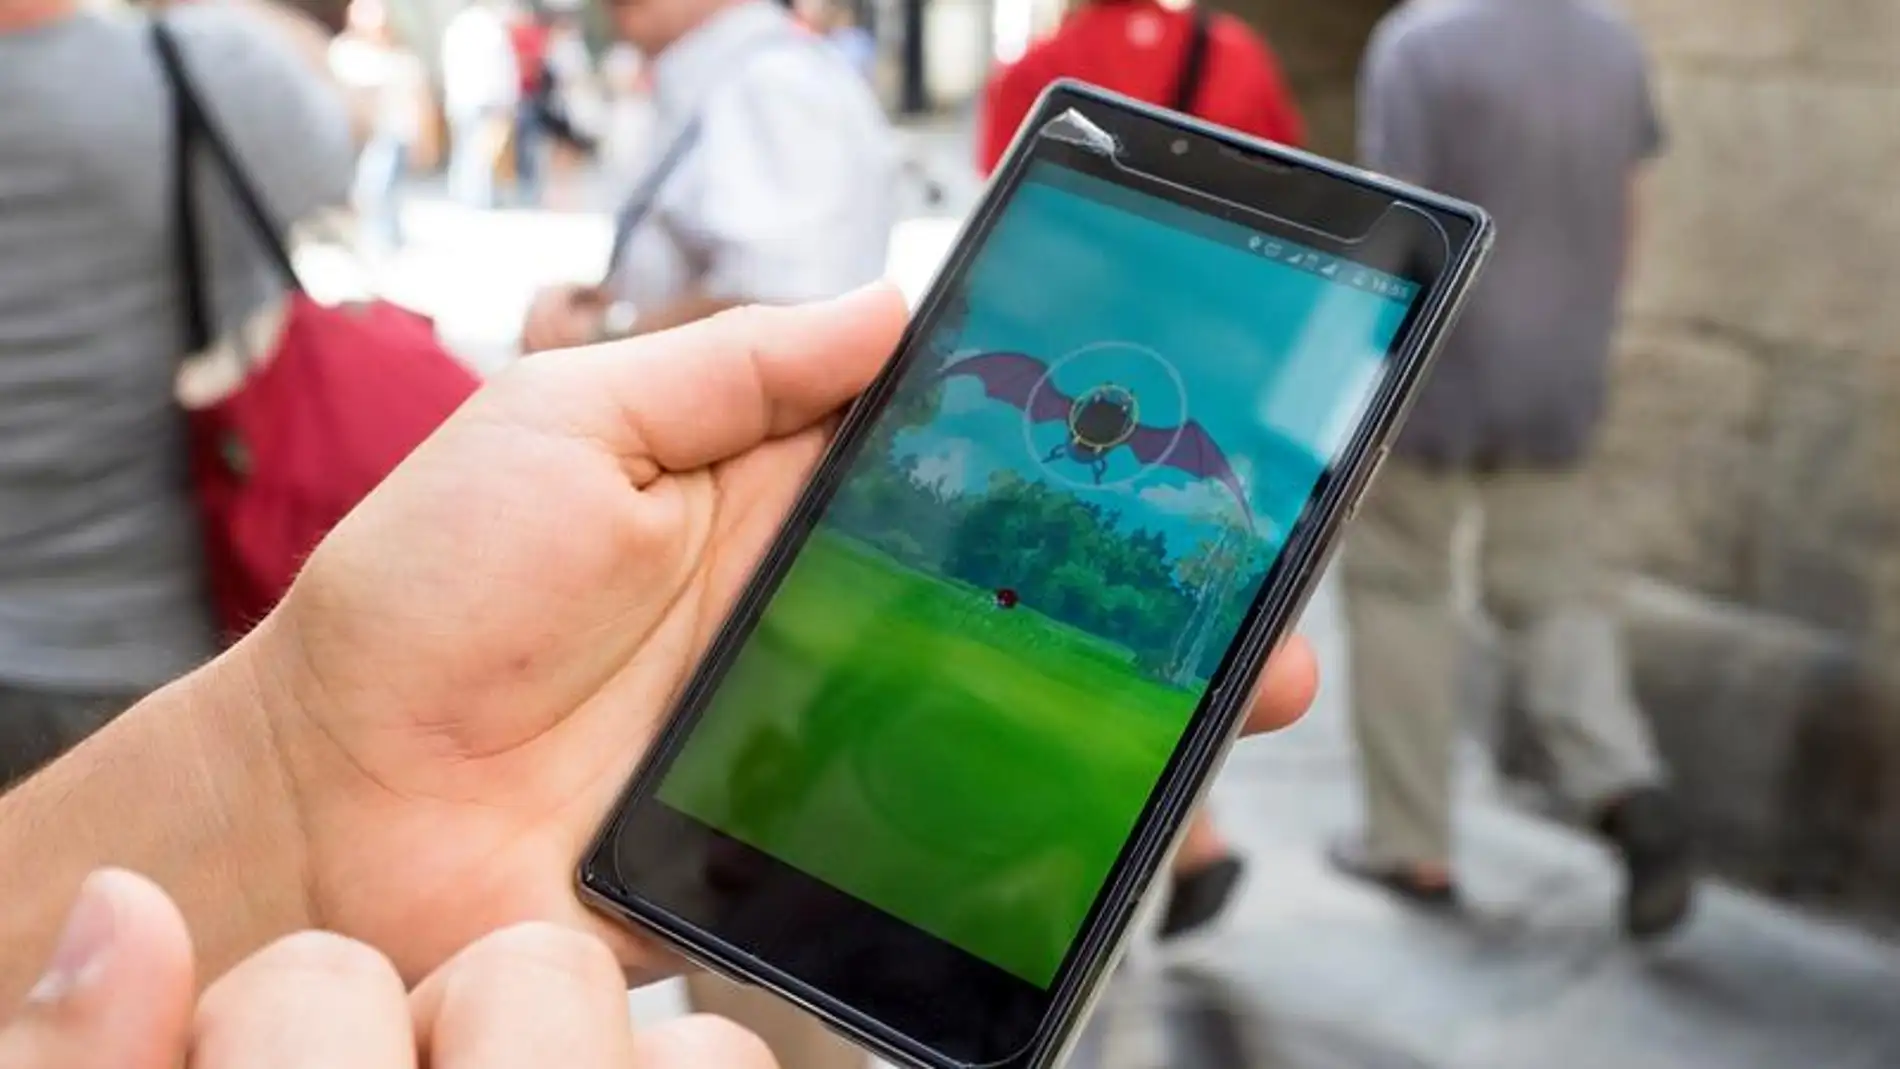 Vista del juego 'Pokémon Go' en un smartphone